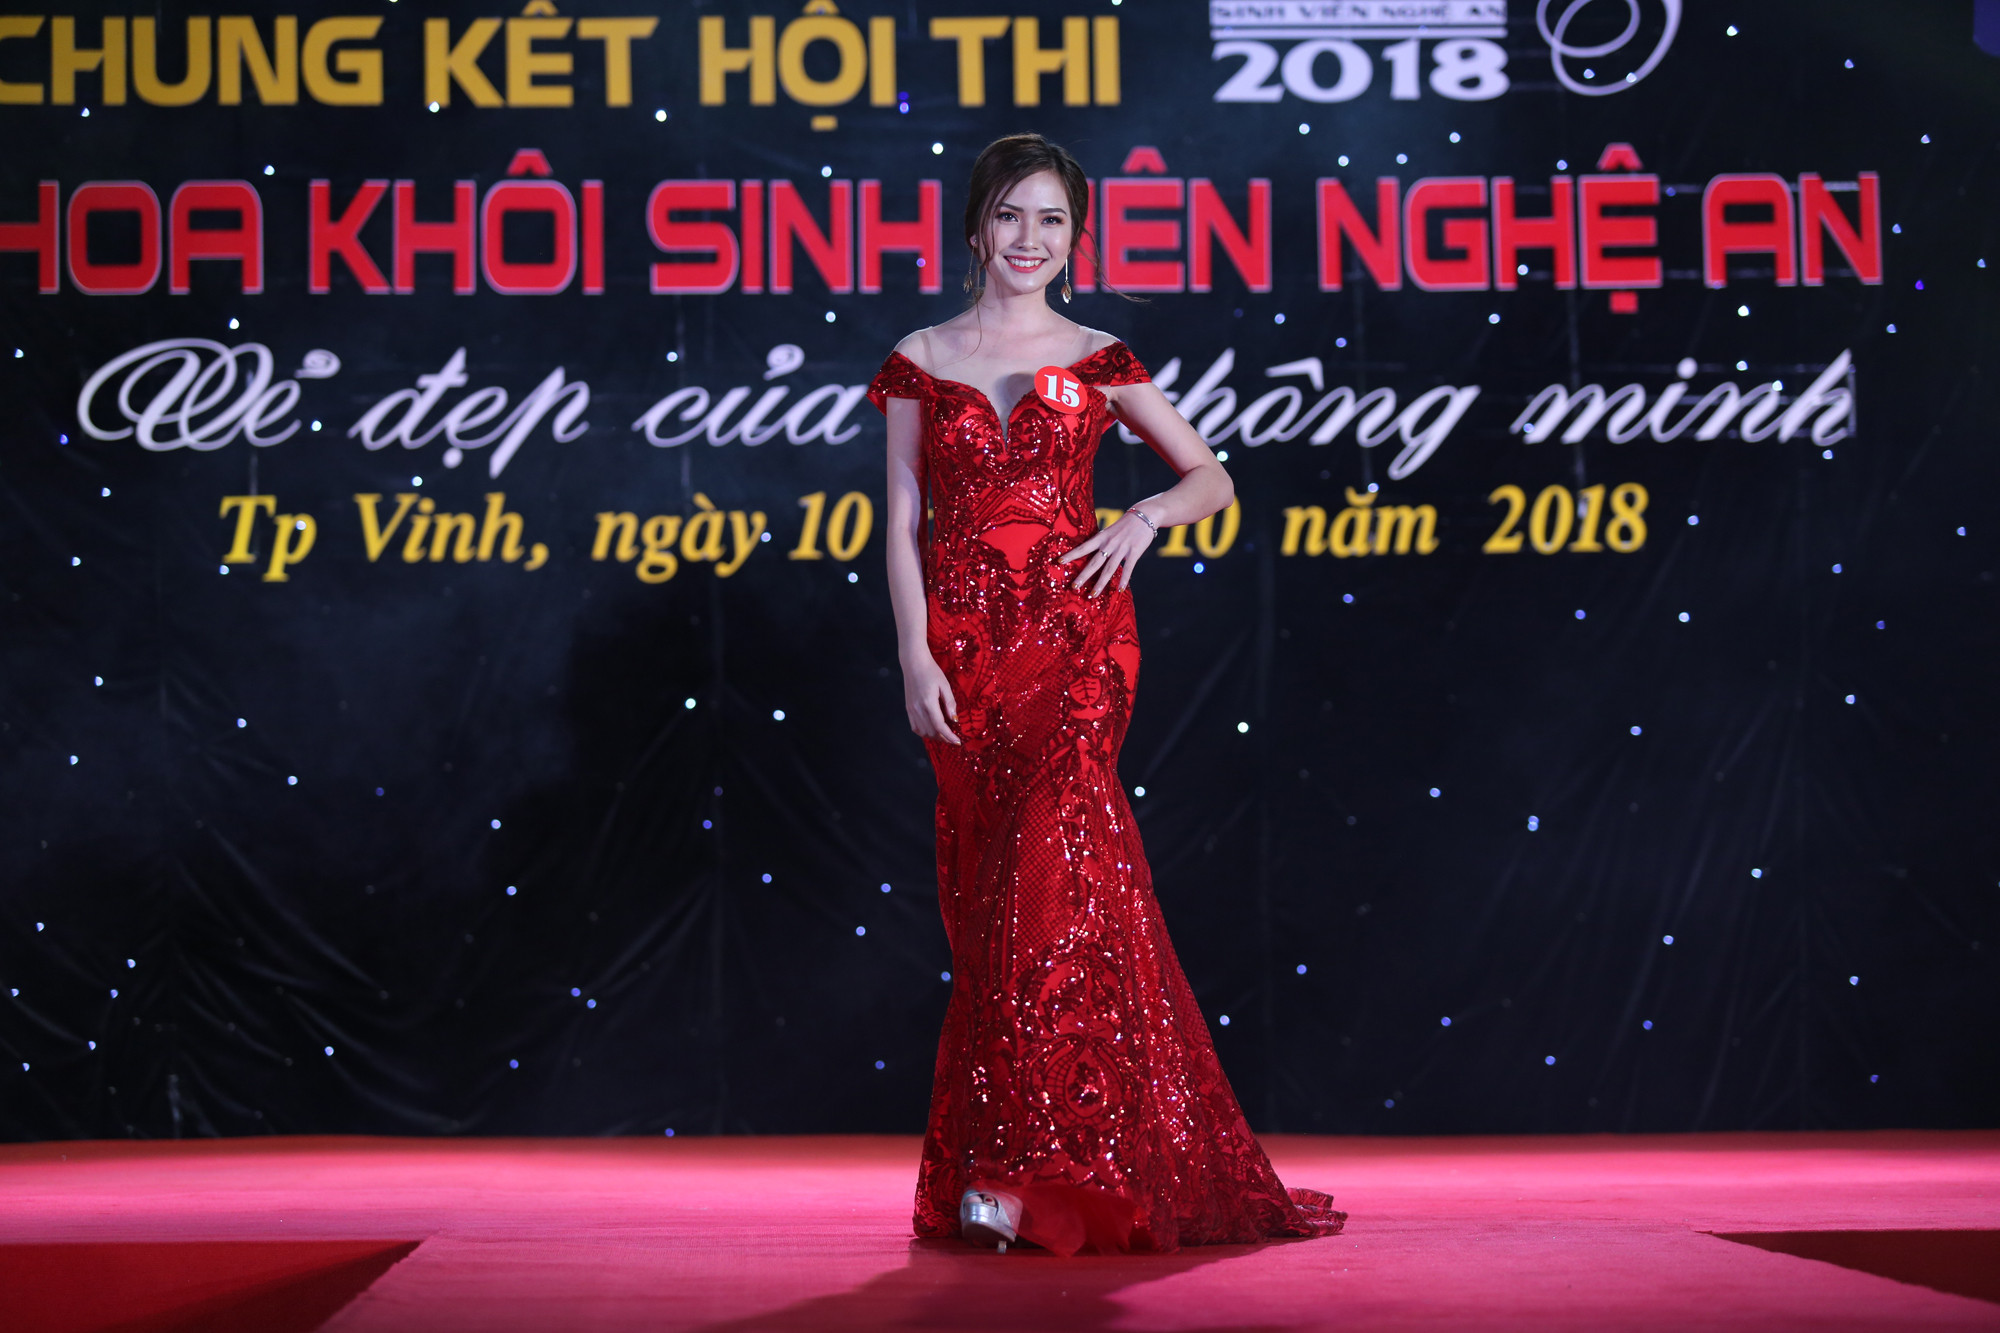 Thí sinh Nguyễn Thị Hoài, số báo danh 15, sinh viên lớp Kế toán K2 – 04, Đại học Kinh tế Nghệ An được bình chọn là thí sinh trình diễn trang phục dạ hội đẹp nhất. Ảnh: Đức Anh